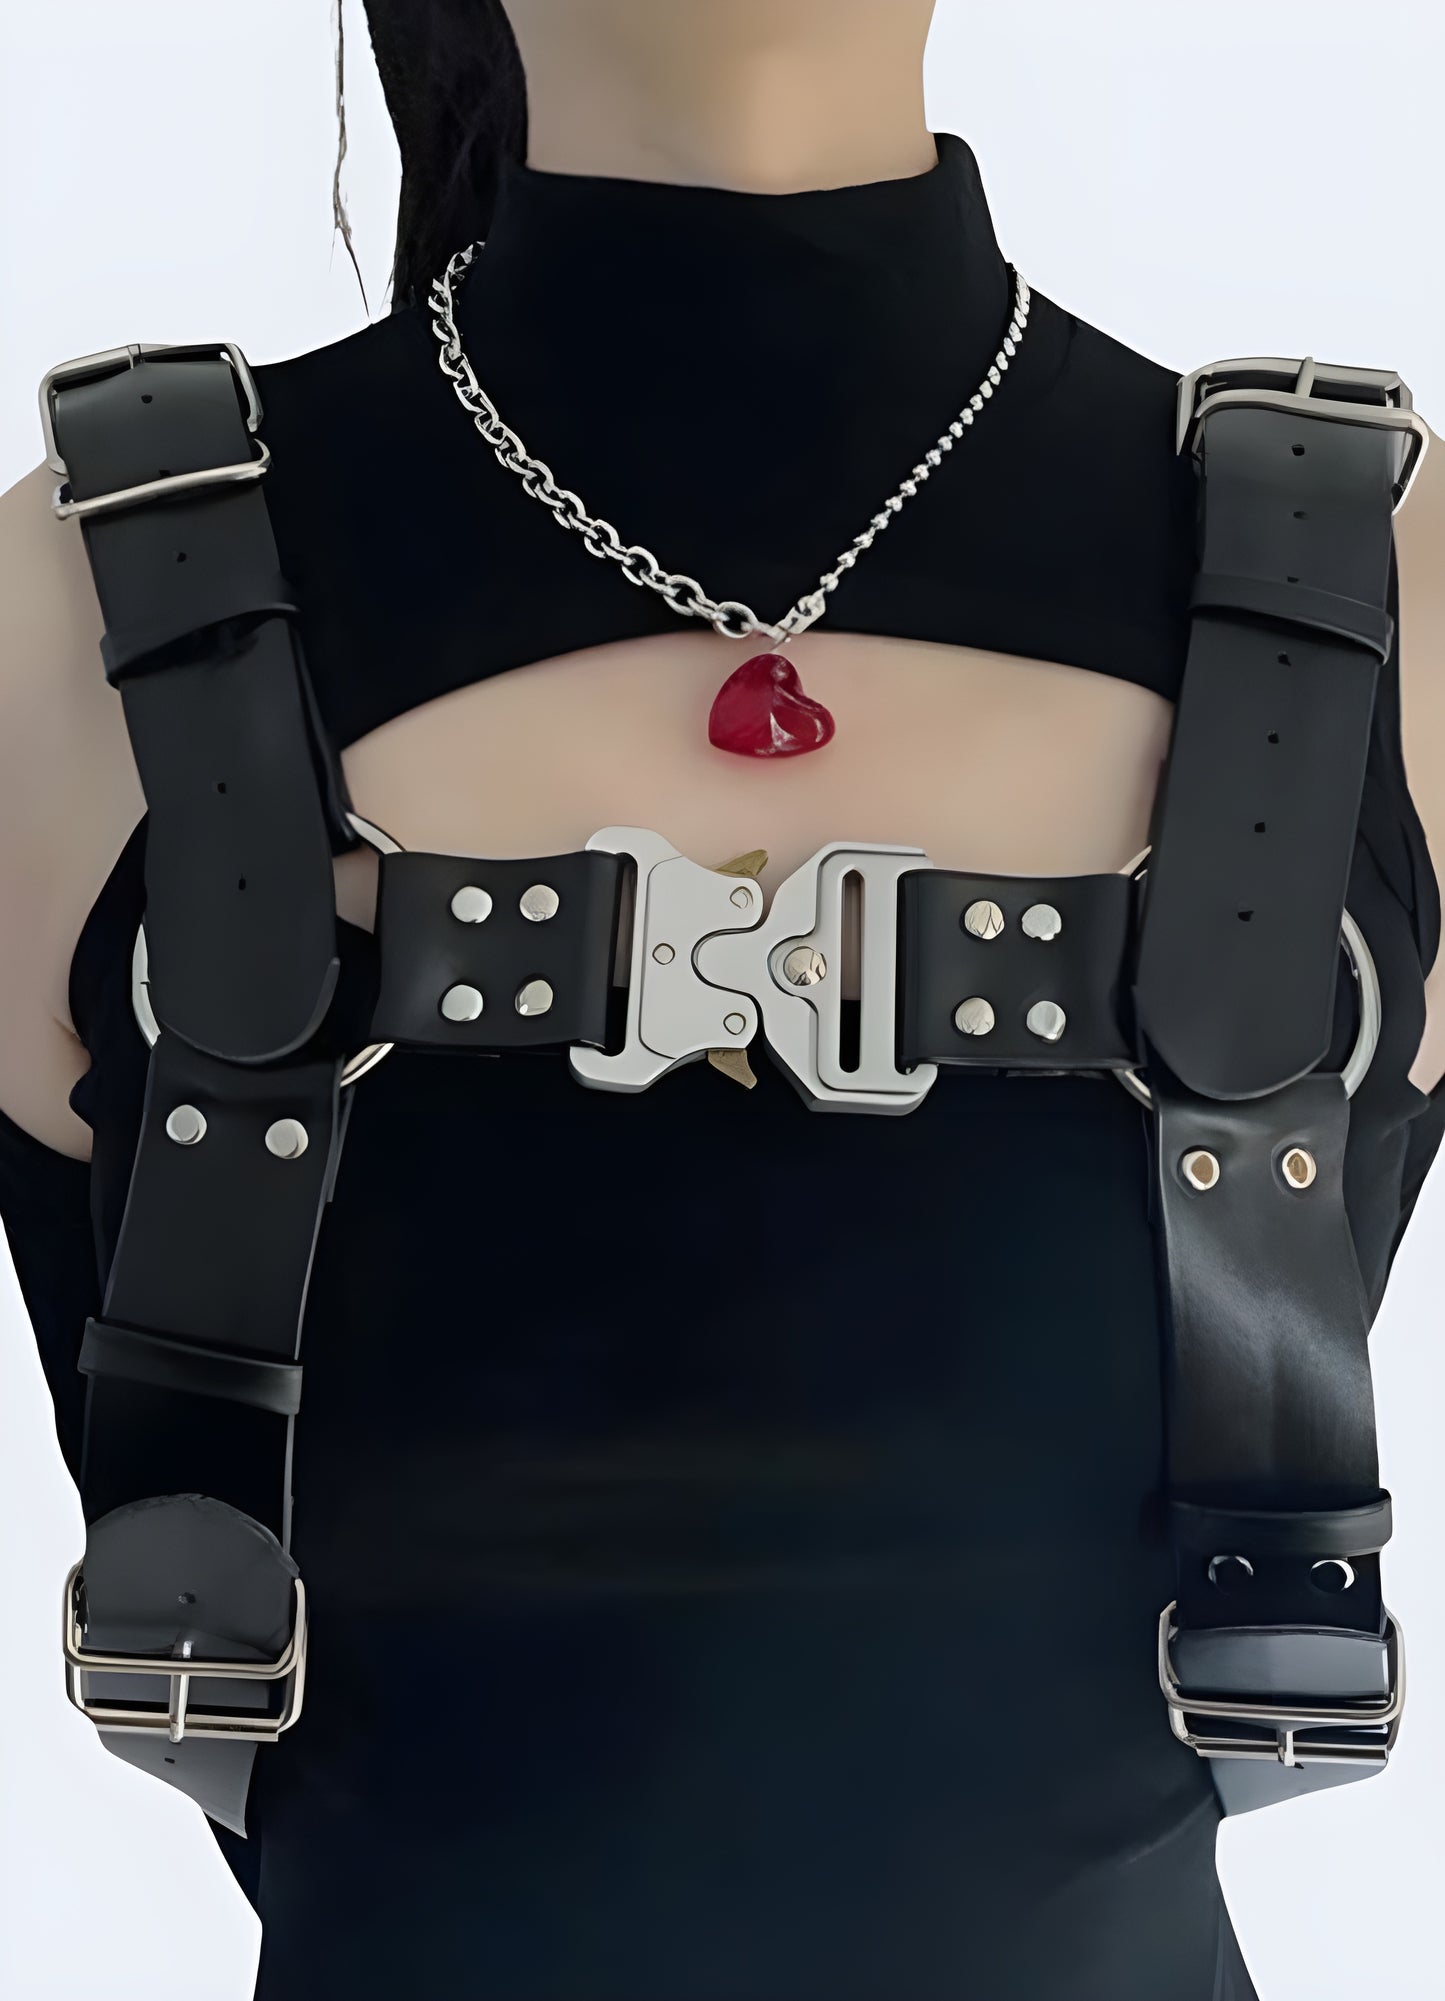 Techwear style belt harness techwear chest harness.